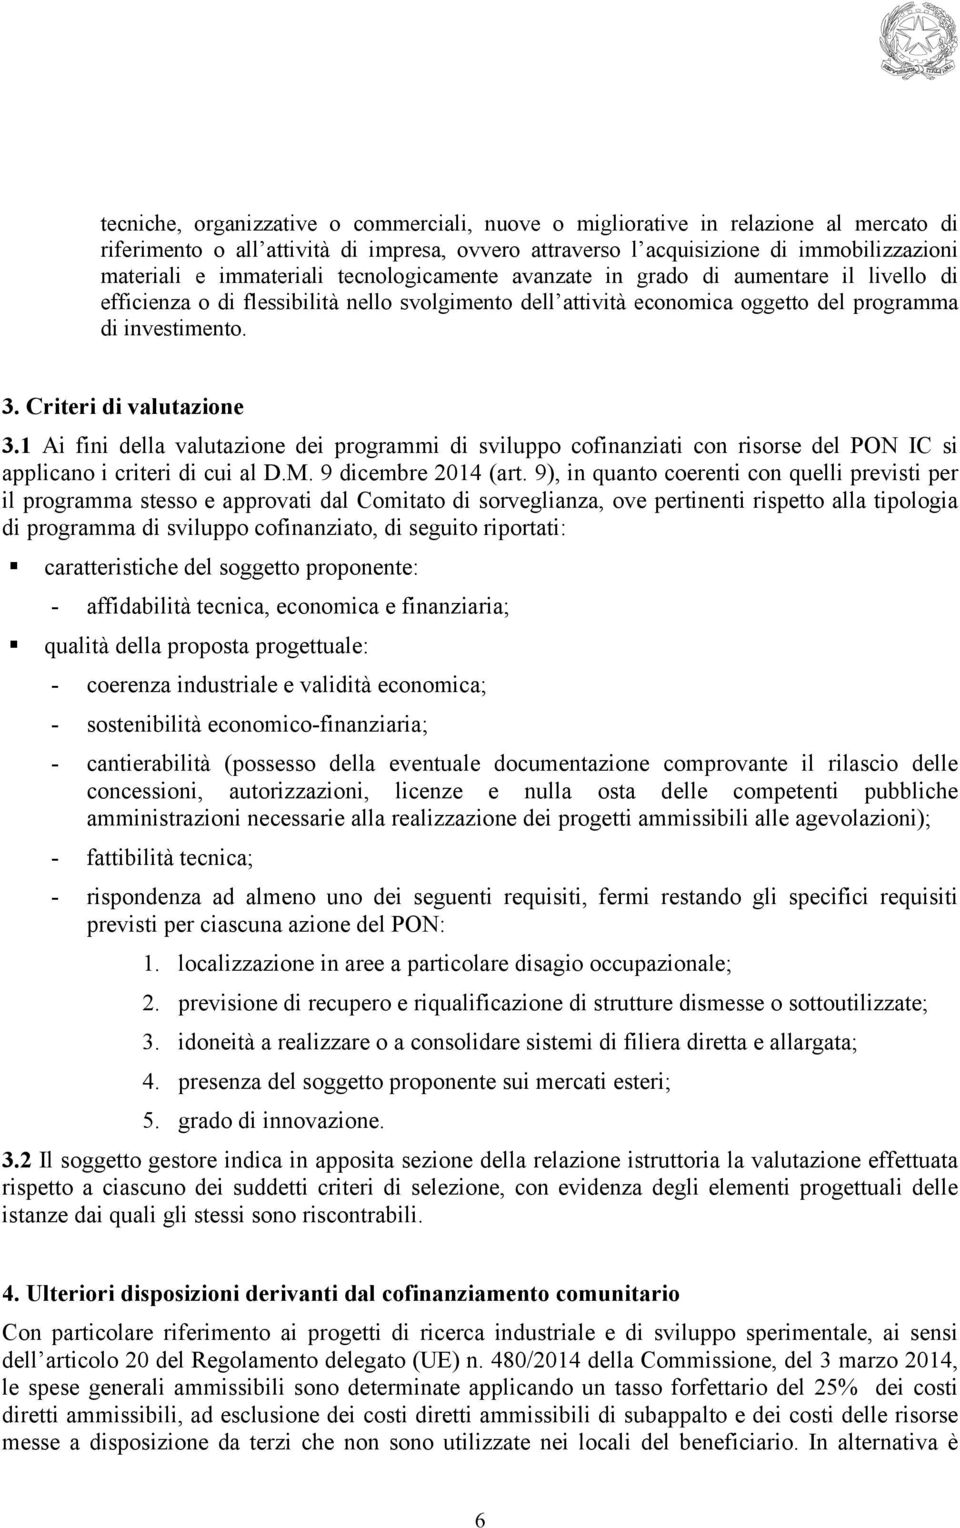 Criteri di valutazione 3.1 Ai fini della valutazione dei programmi di sviluppo cofinanziati con risorse del PON IC si applicano i criteri di cui al D.M. 9 dicembre 2014 (art.